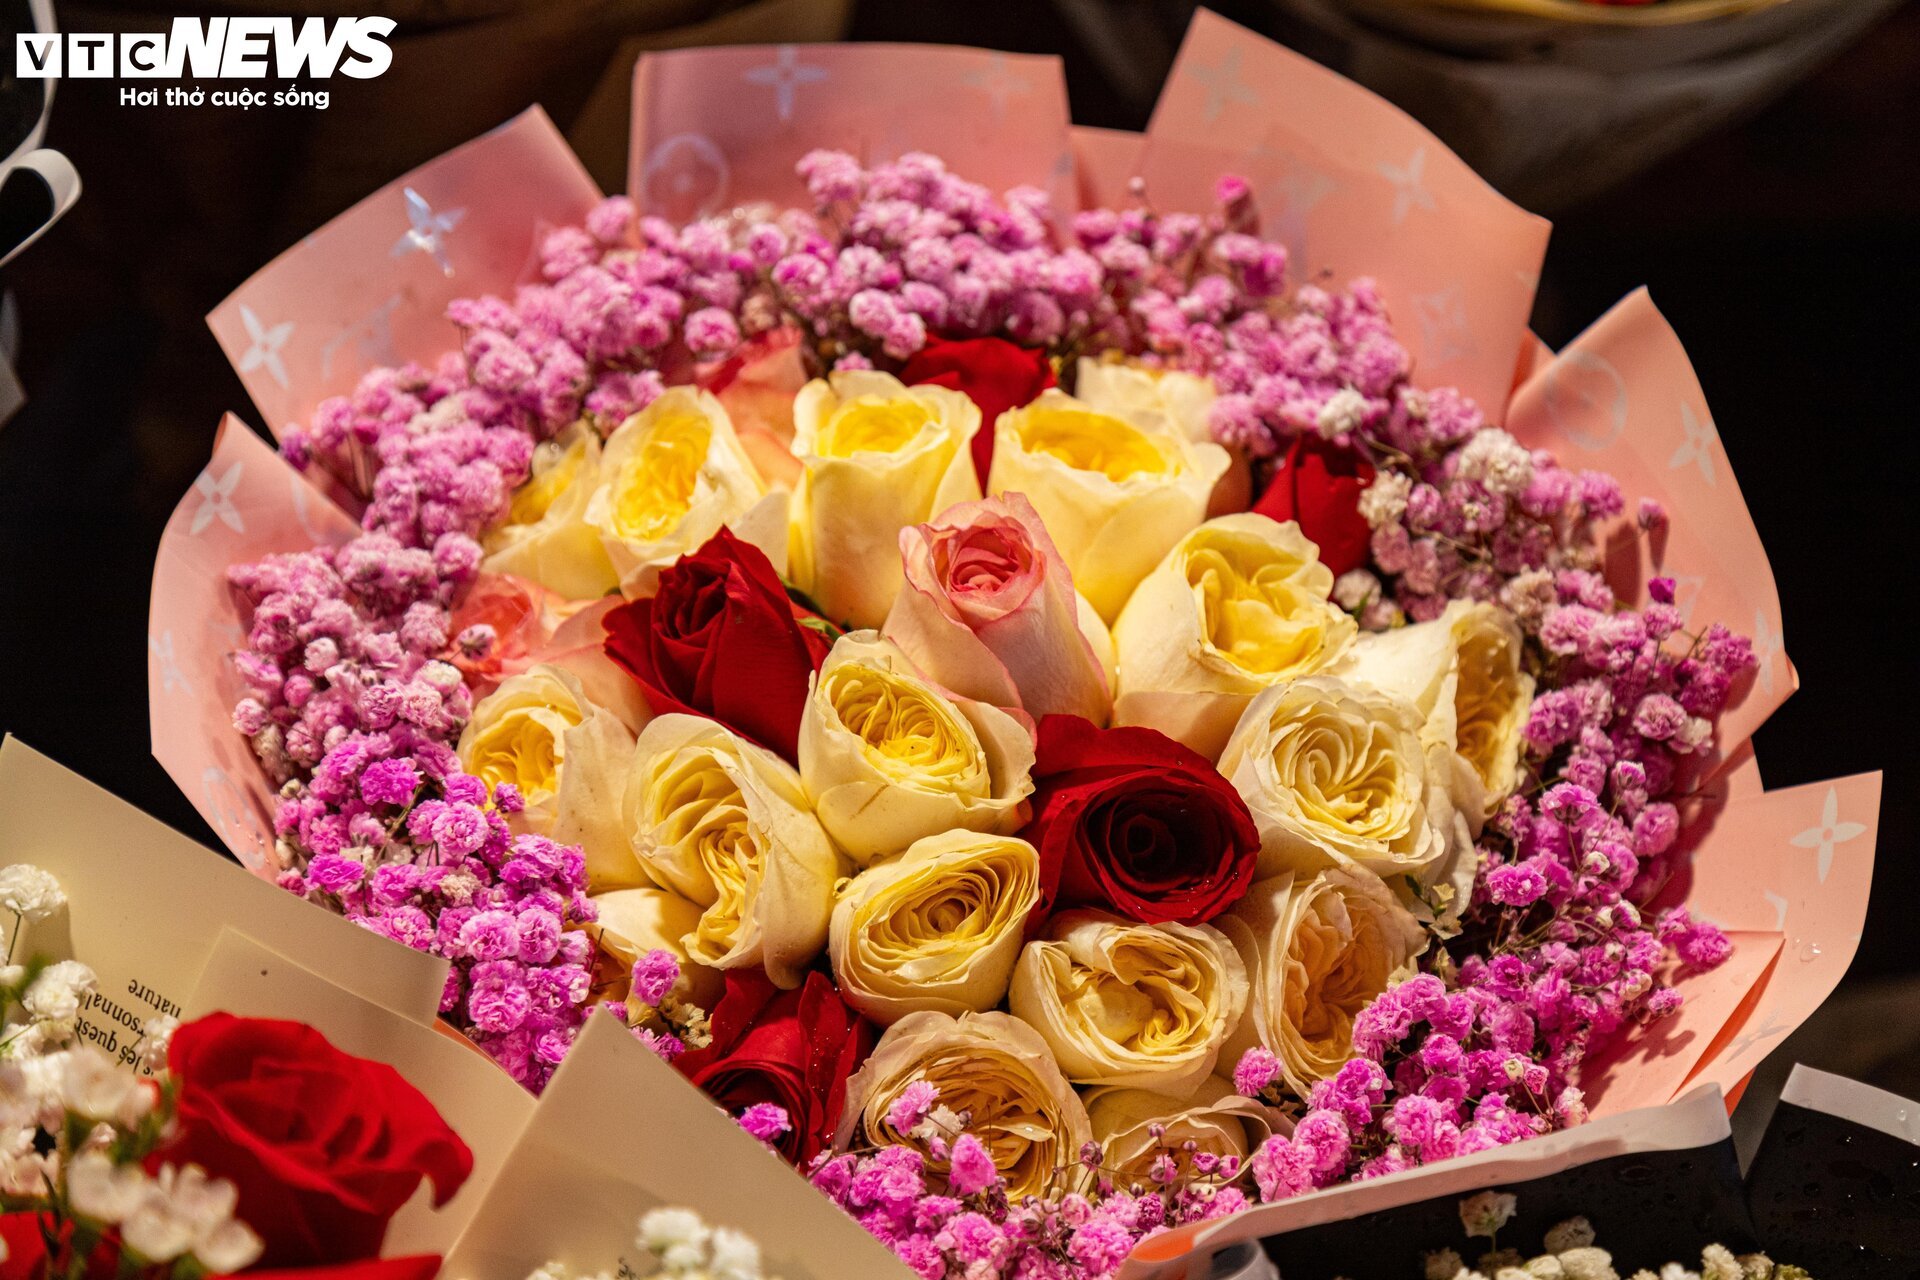 Chợ hoa tươi lớn nhất Hà Nội nhộn nhịp suốt đêm trước ngày 8/3 - Ảnh 9.